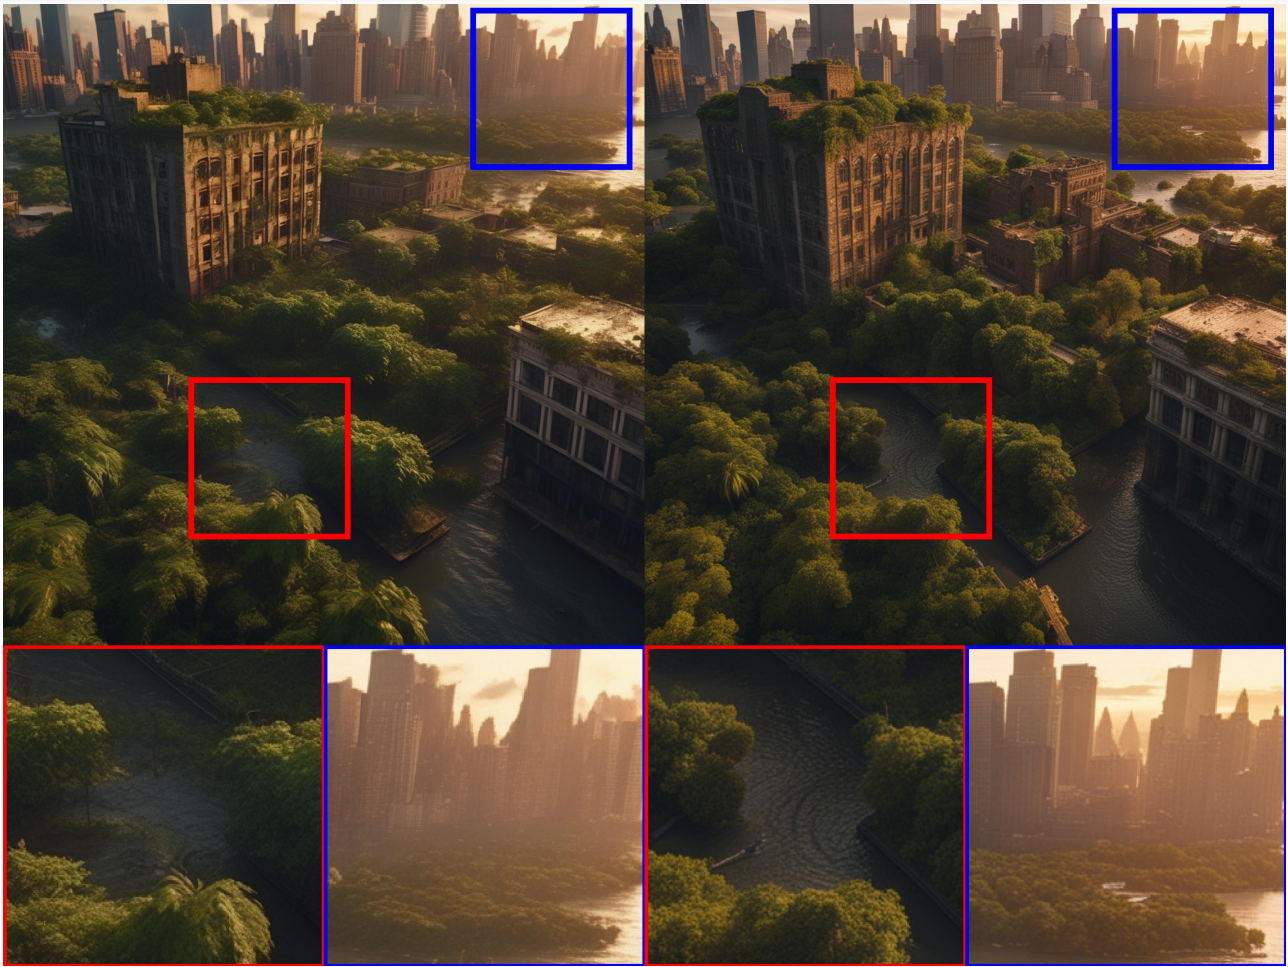 그림 6. 논의된 정제 모델을 사용하지 않는 경우(왼쪽)와 사용한 경우(오른쪽)의 1024x1024 이미지. 프롬프트:&quot;Epic long distance cityscape photo of New York City flooded by the ocean and overgrown buildings and jungle ruins in rainforest&#44; at sunset&#44; cinematic shot&#44; highly detailed&#44; 8k&#44; golden light&quot;.추가 이미지는 그림 13을 참조하세요.